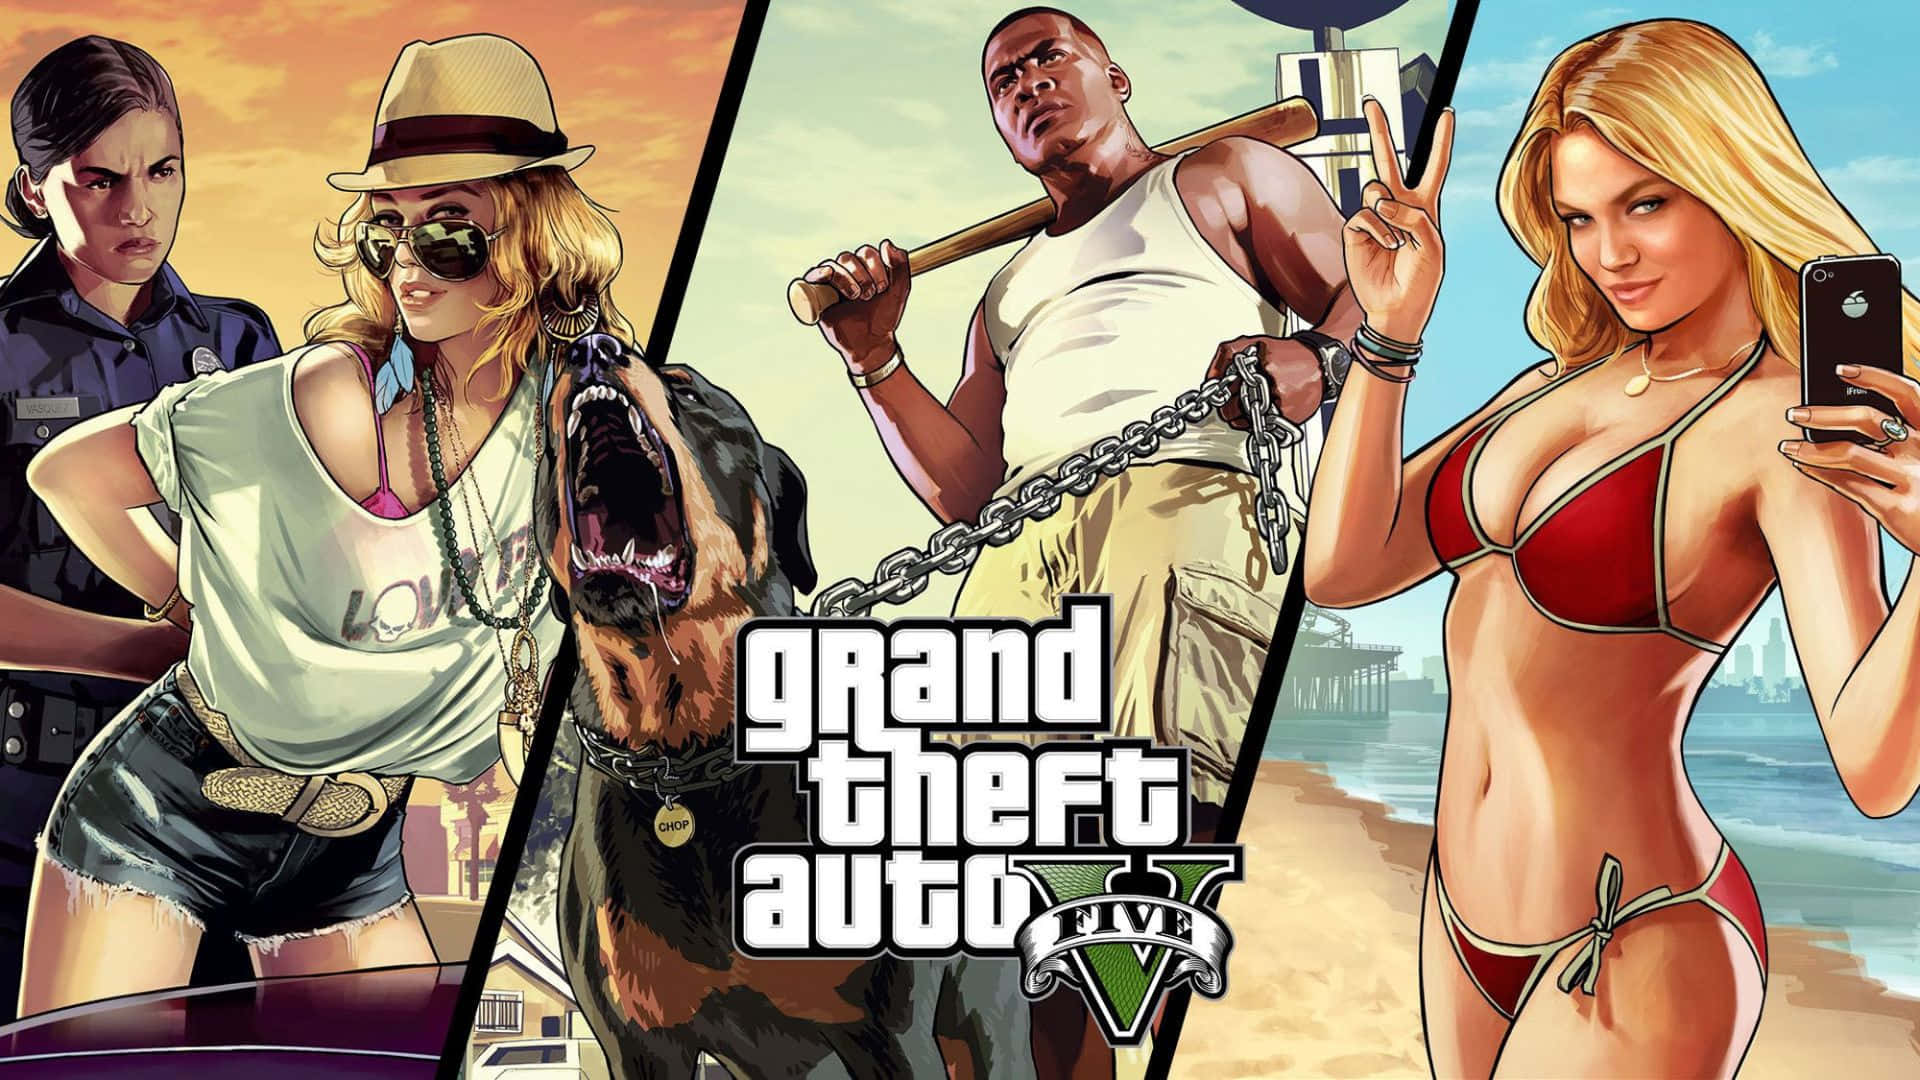 Il Miglior Background Di Grand Theft Auto V